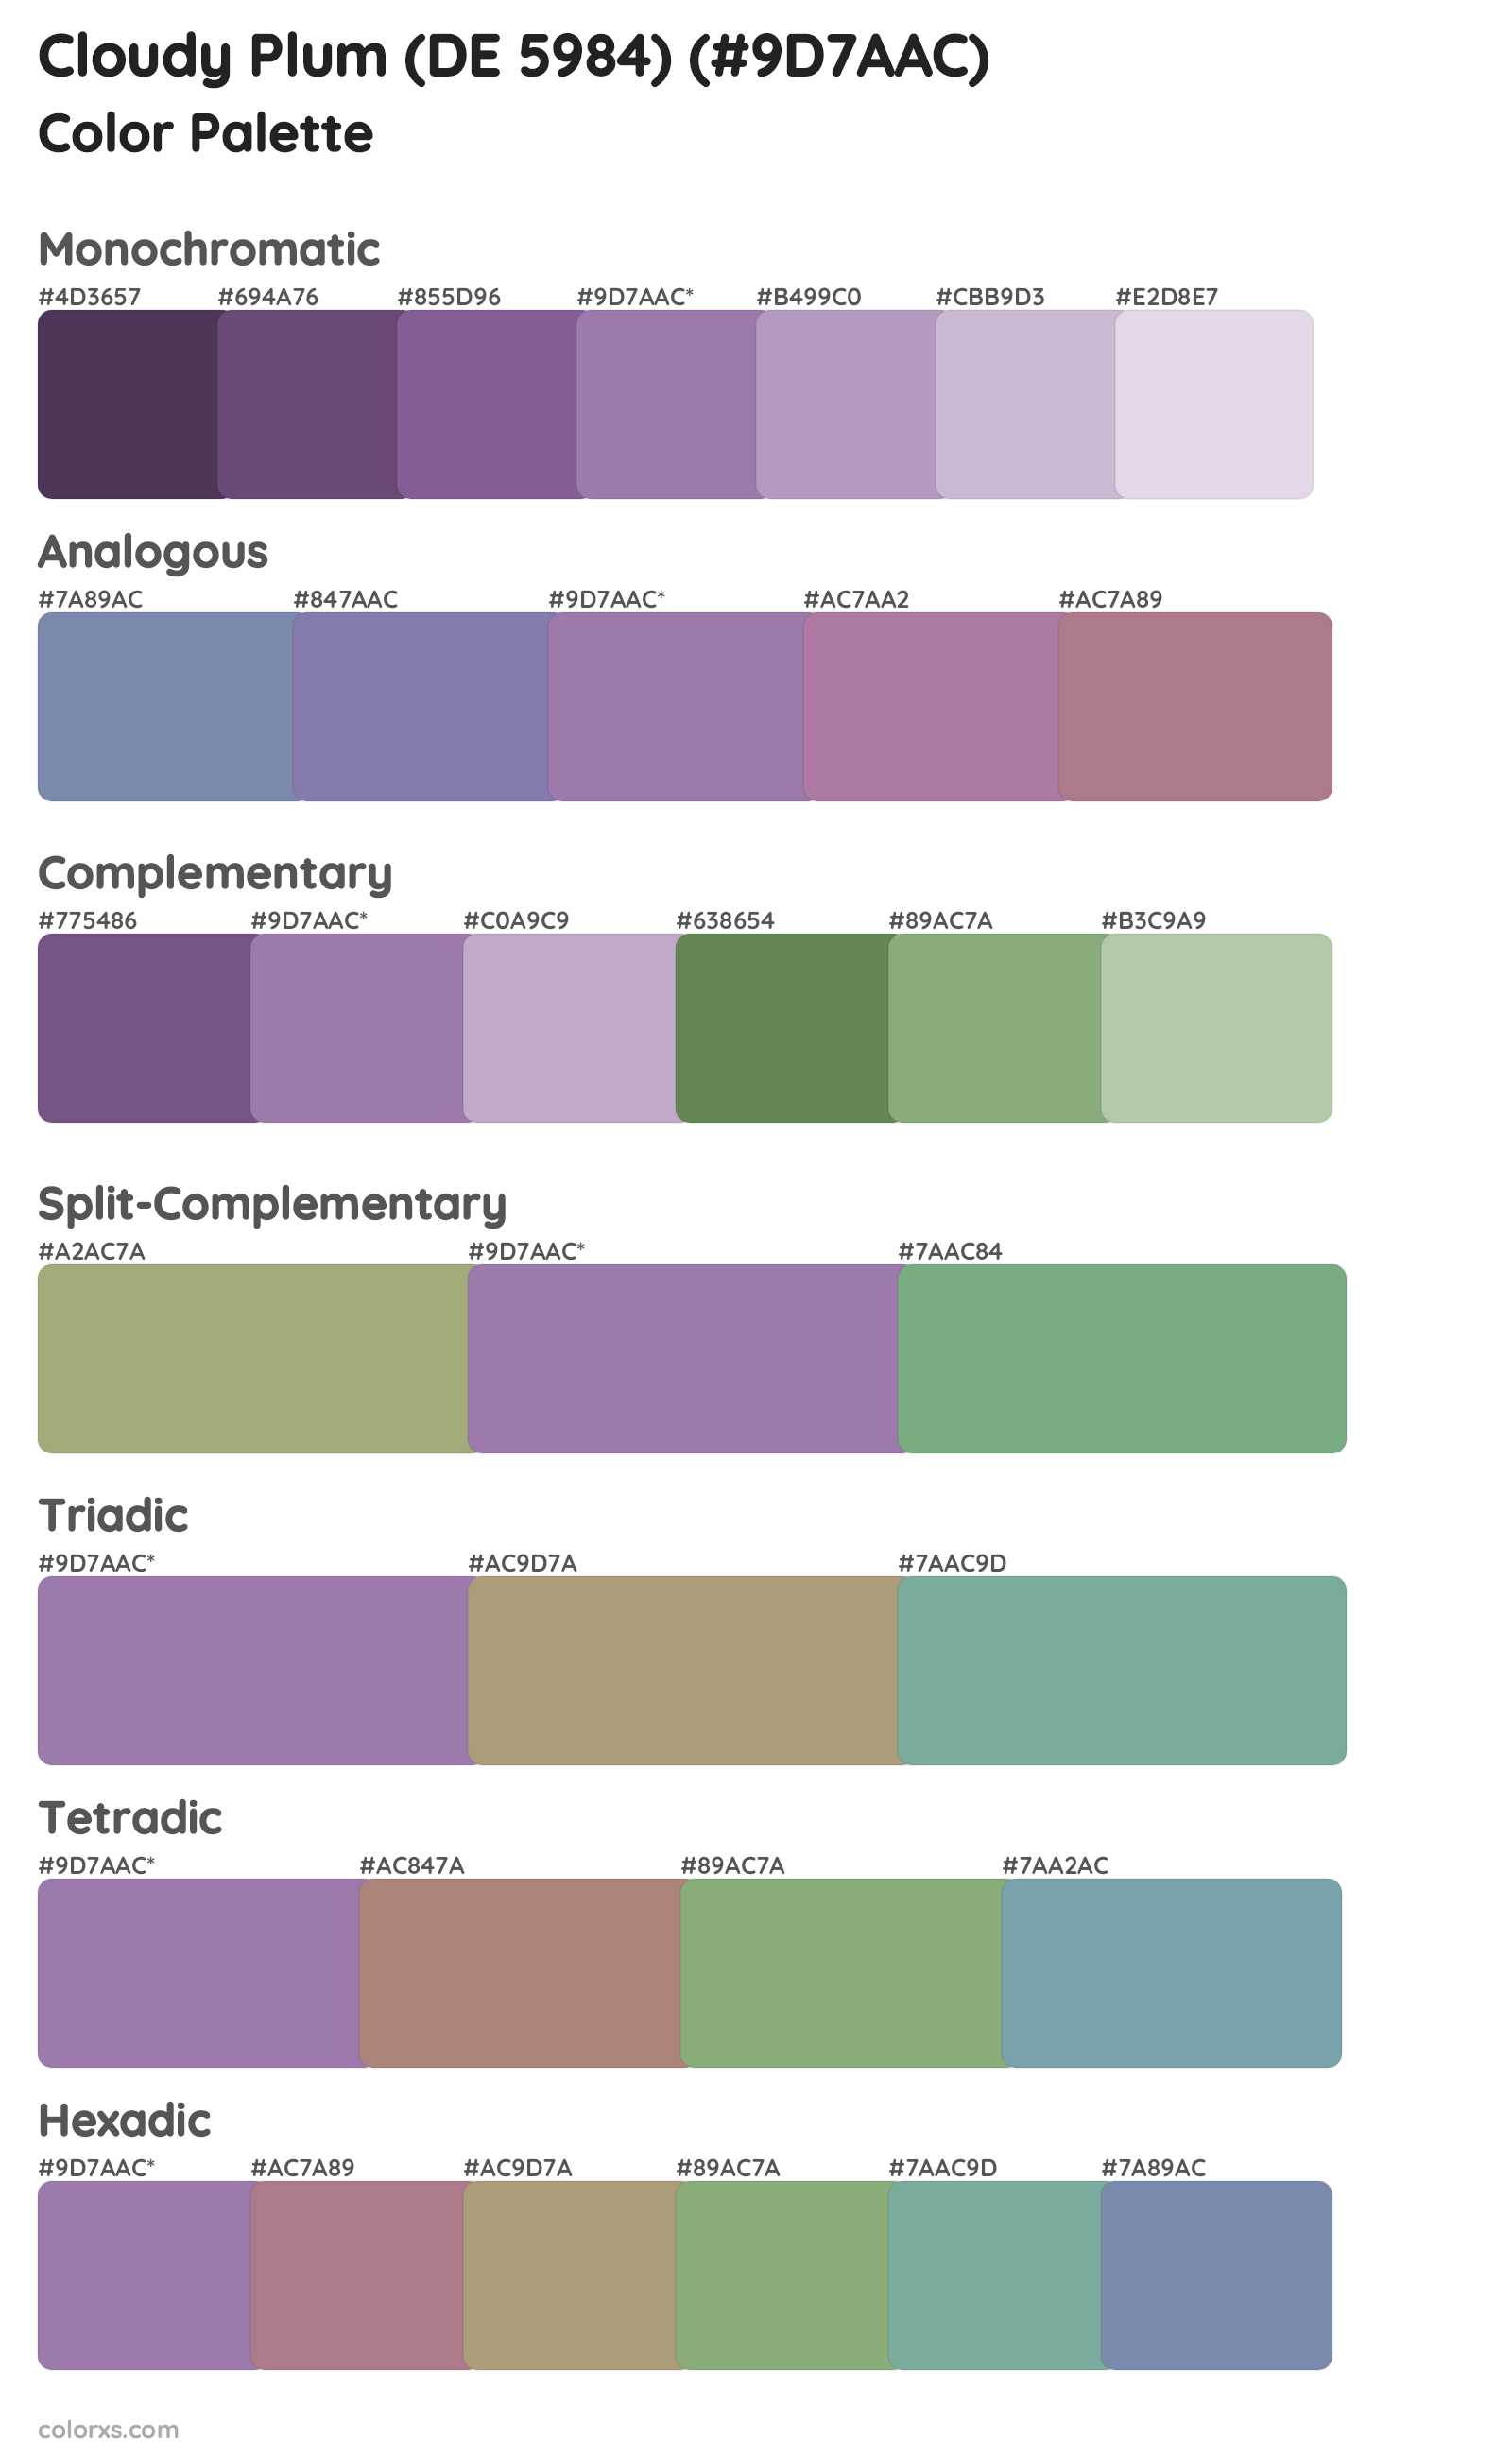 Cloudy Plum (DE 5984) Color Scheme Palettes